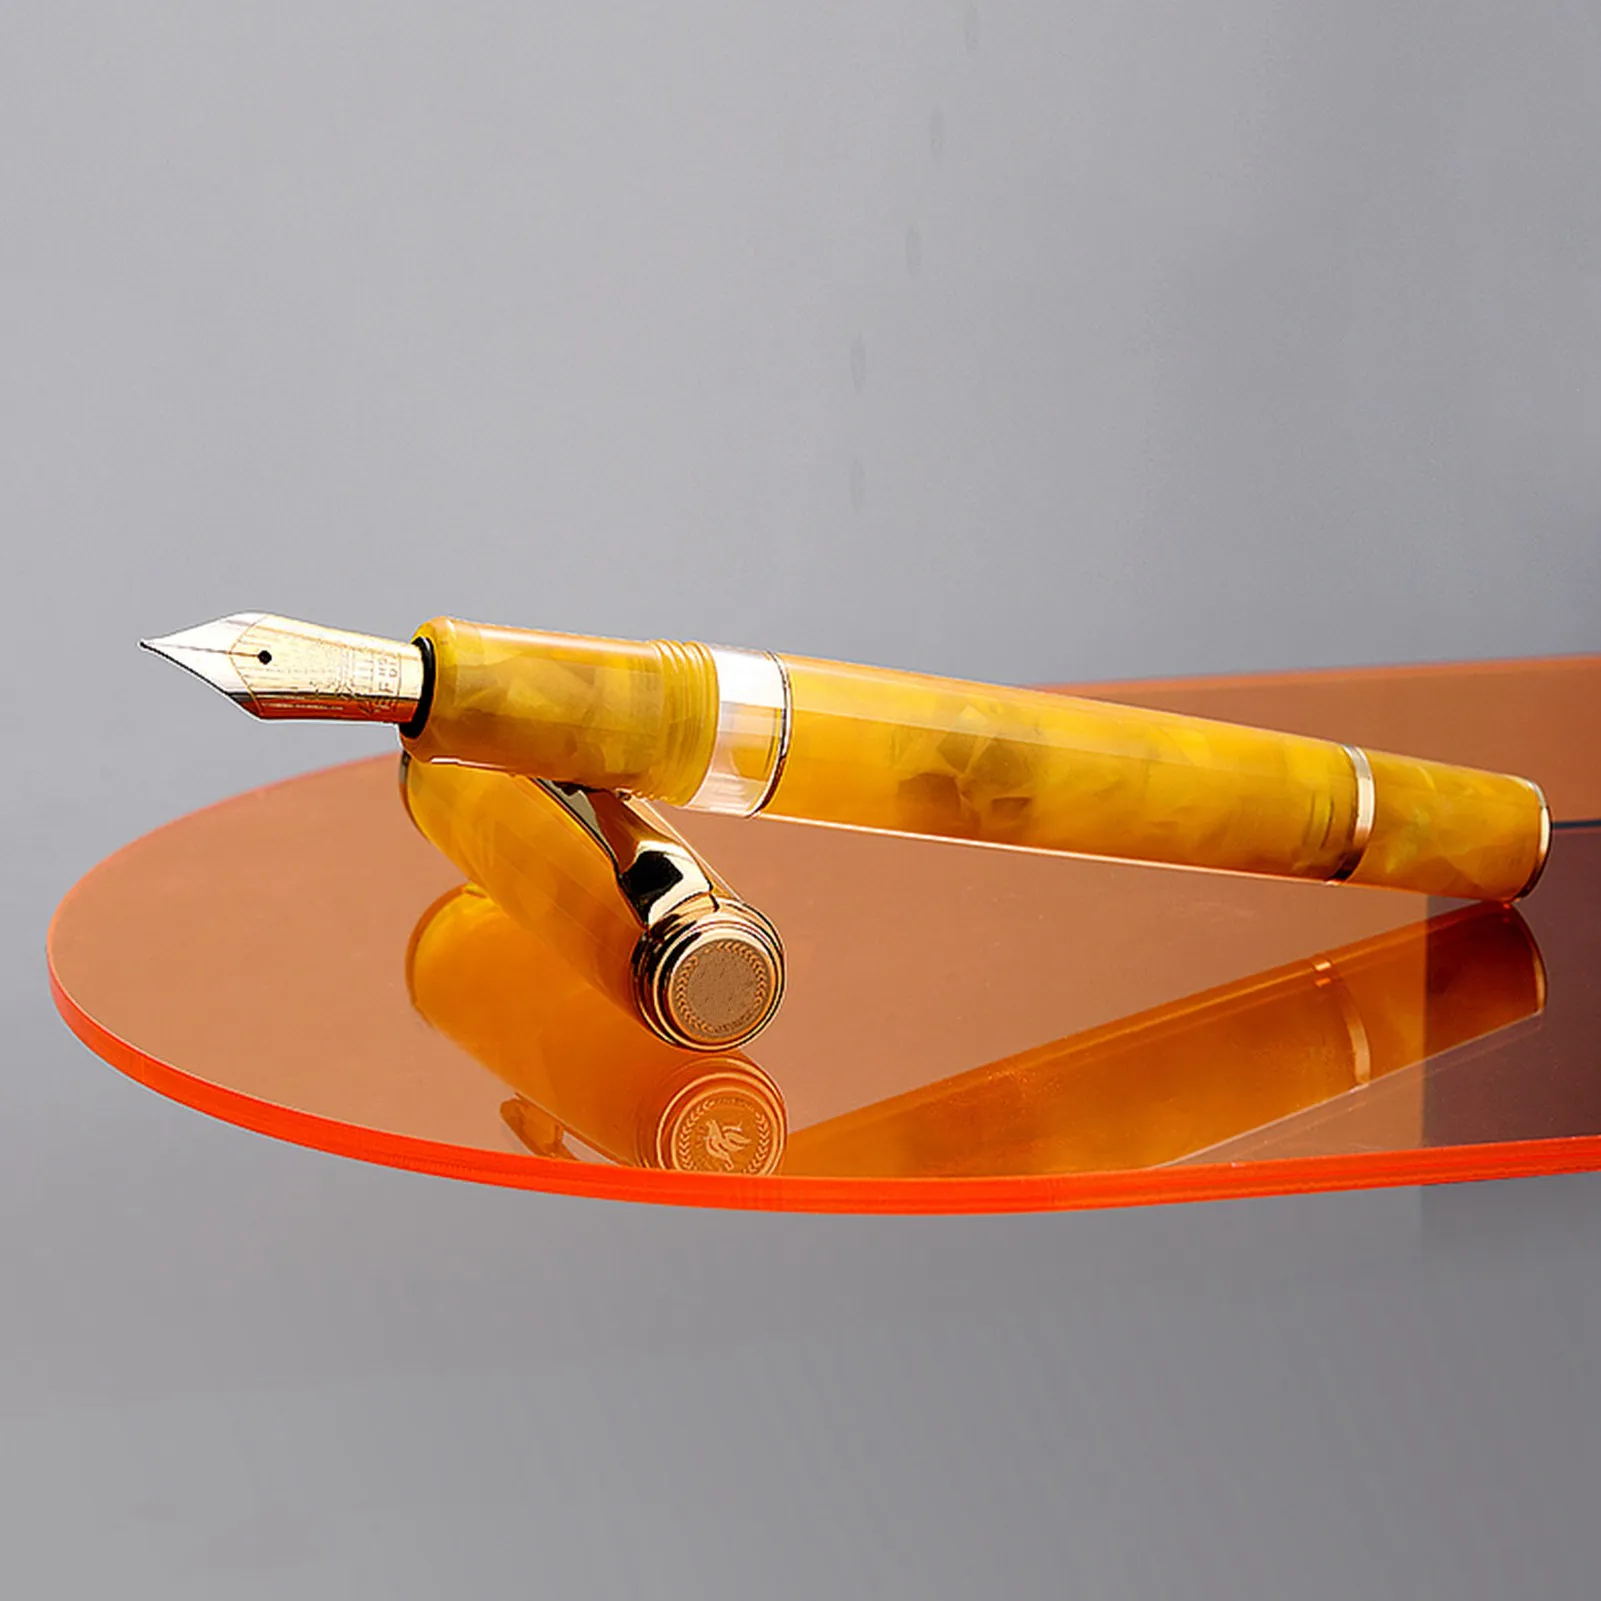 Hongdian N1S töltőtollat, dugattyús akril gyanta toll kalligráfia kitűnő tanuló üzleti, irodai ajándék retró tollak 0.5 mm-es EF nib Kép 1